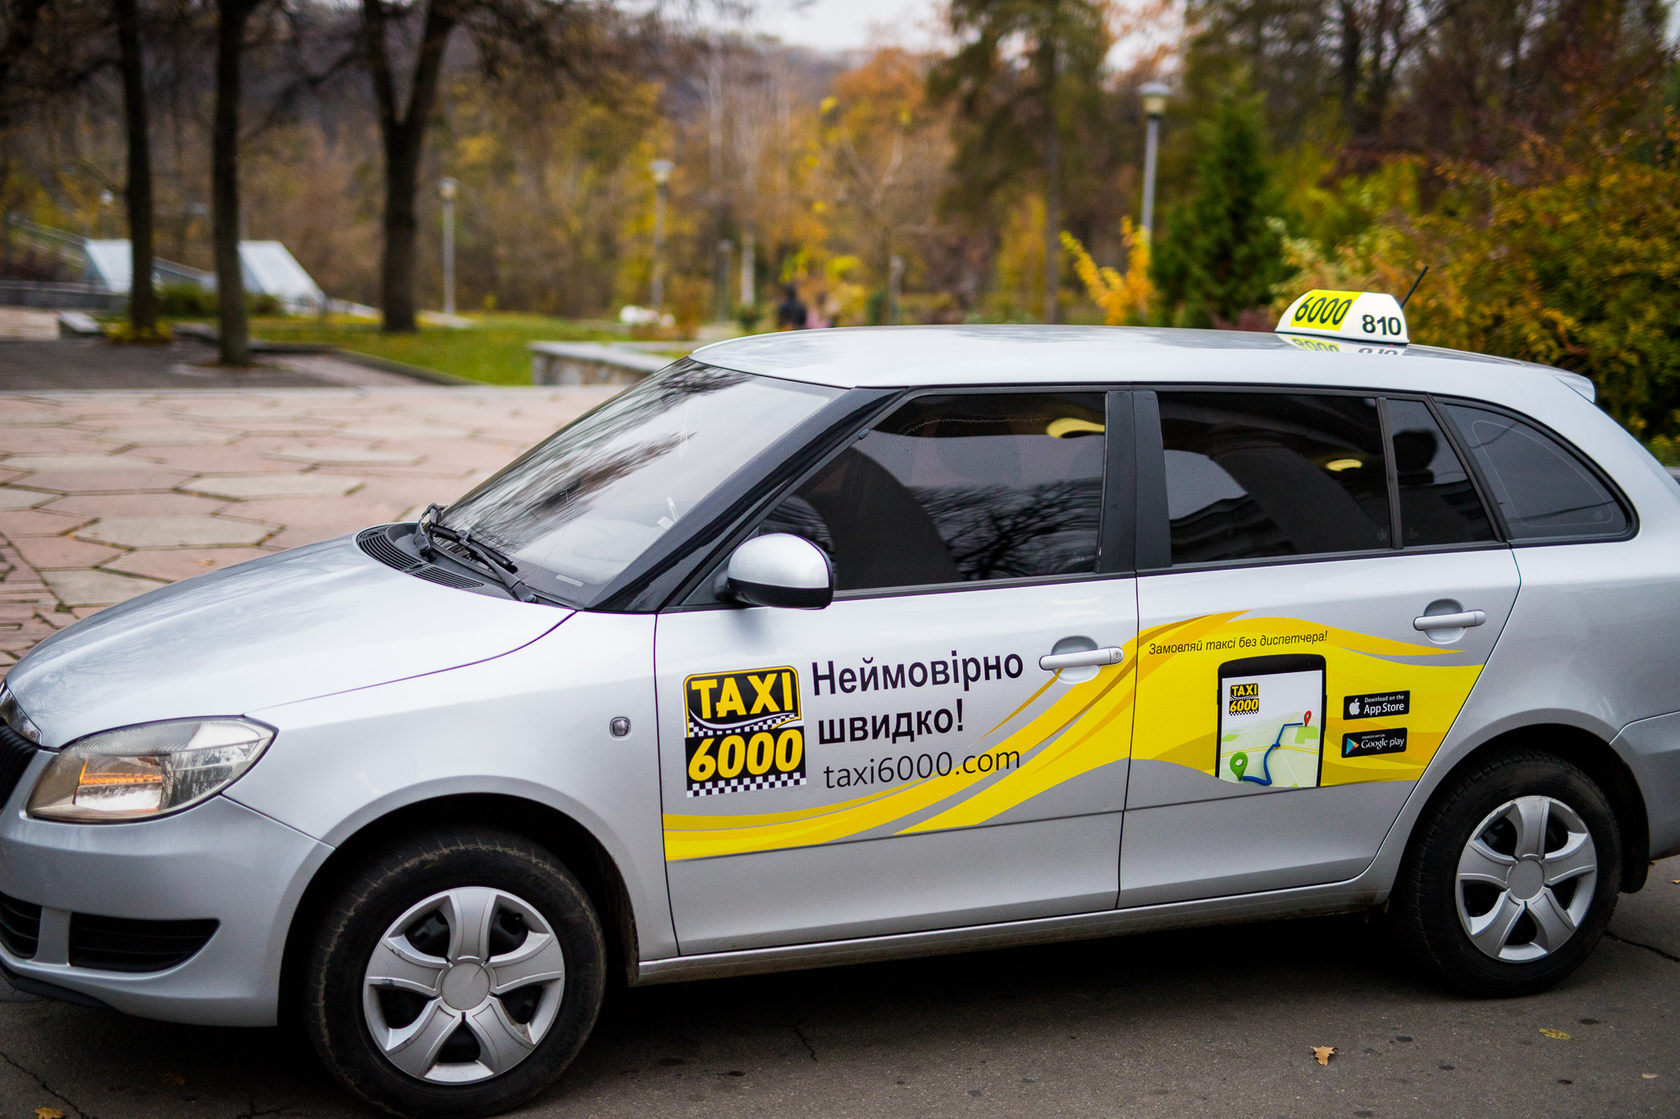 Дешевое такси в екатеринбурге. Такси десятка. Такси 6000. Такси три десятки. Такси Opti.